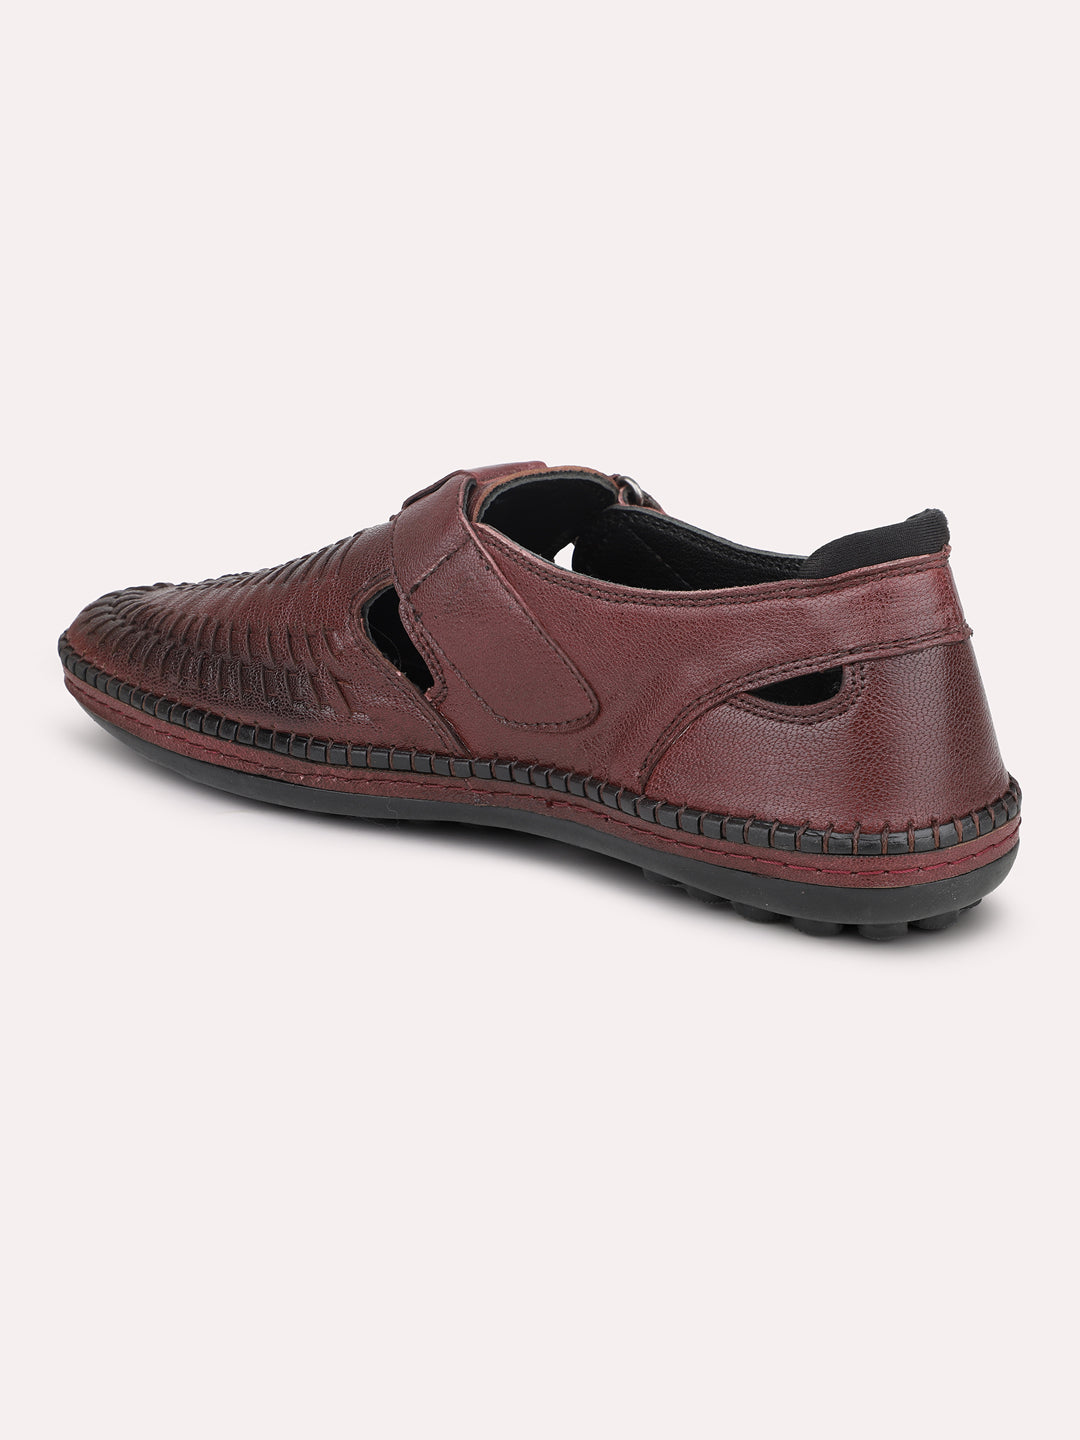 Atesber Cherry Textured Casual Sandal For Men